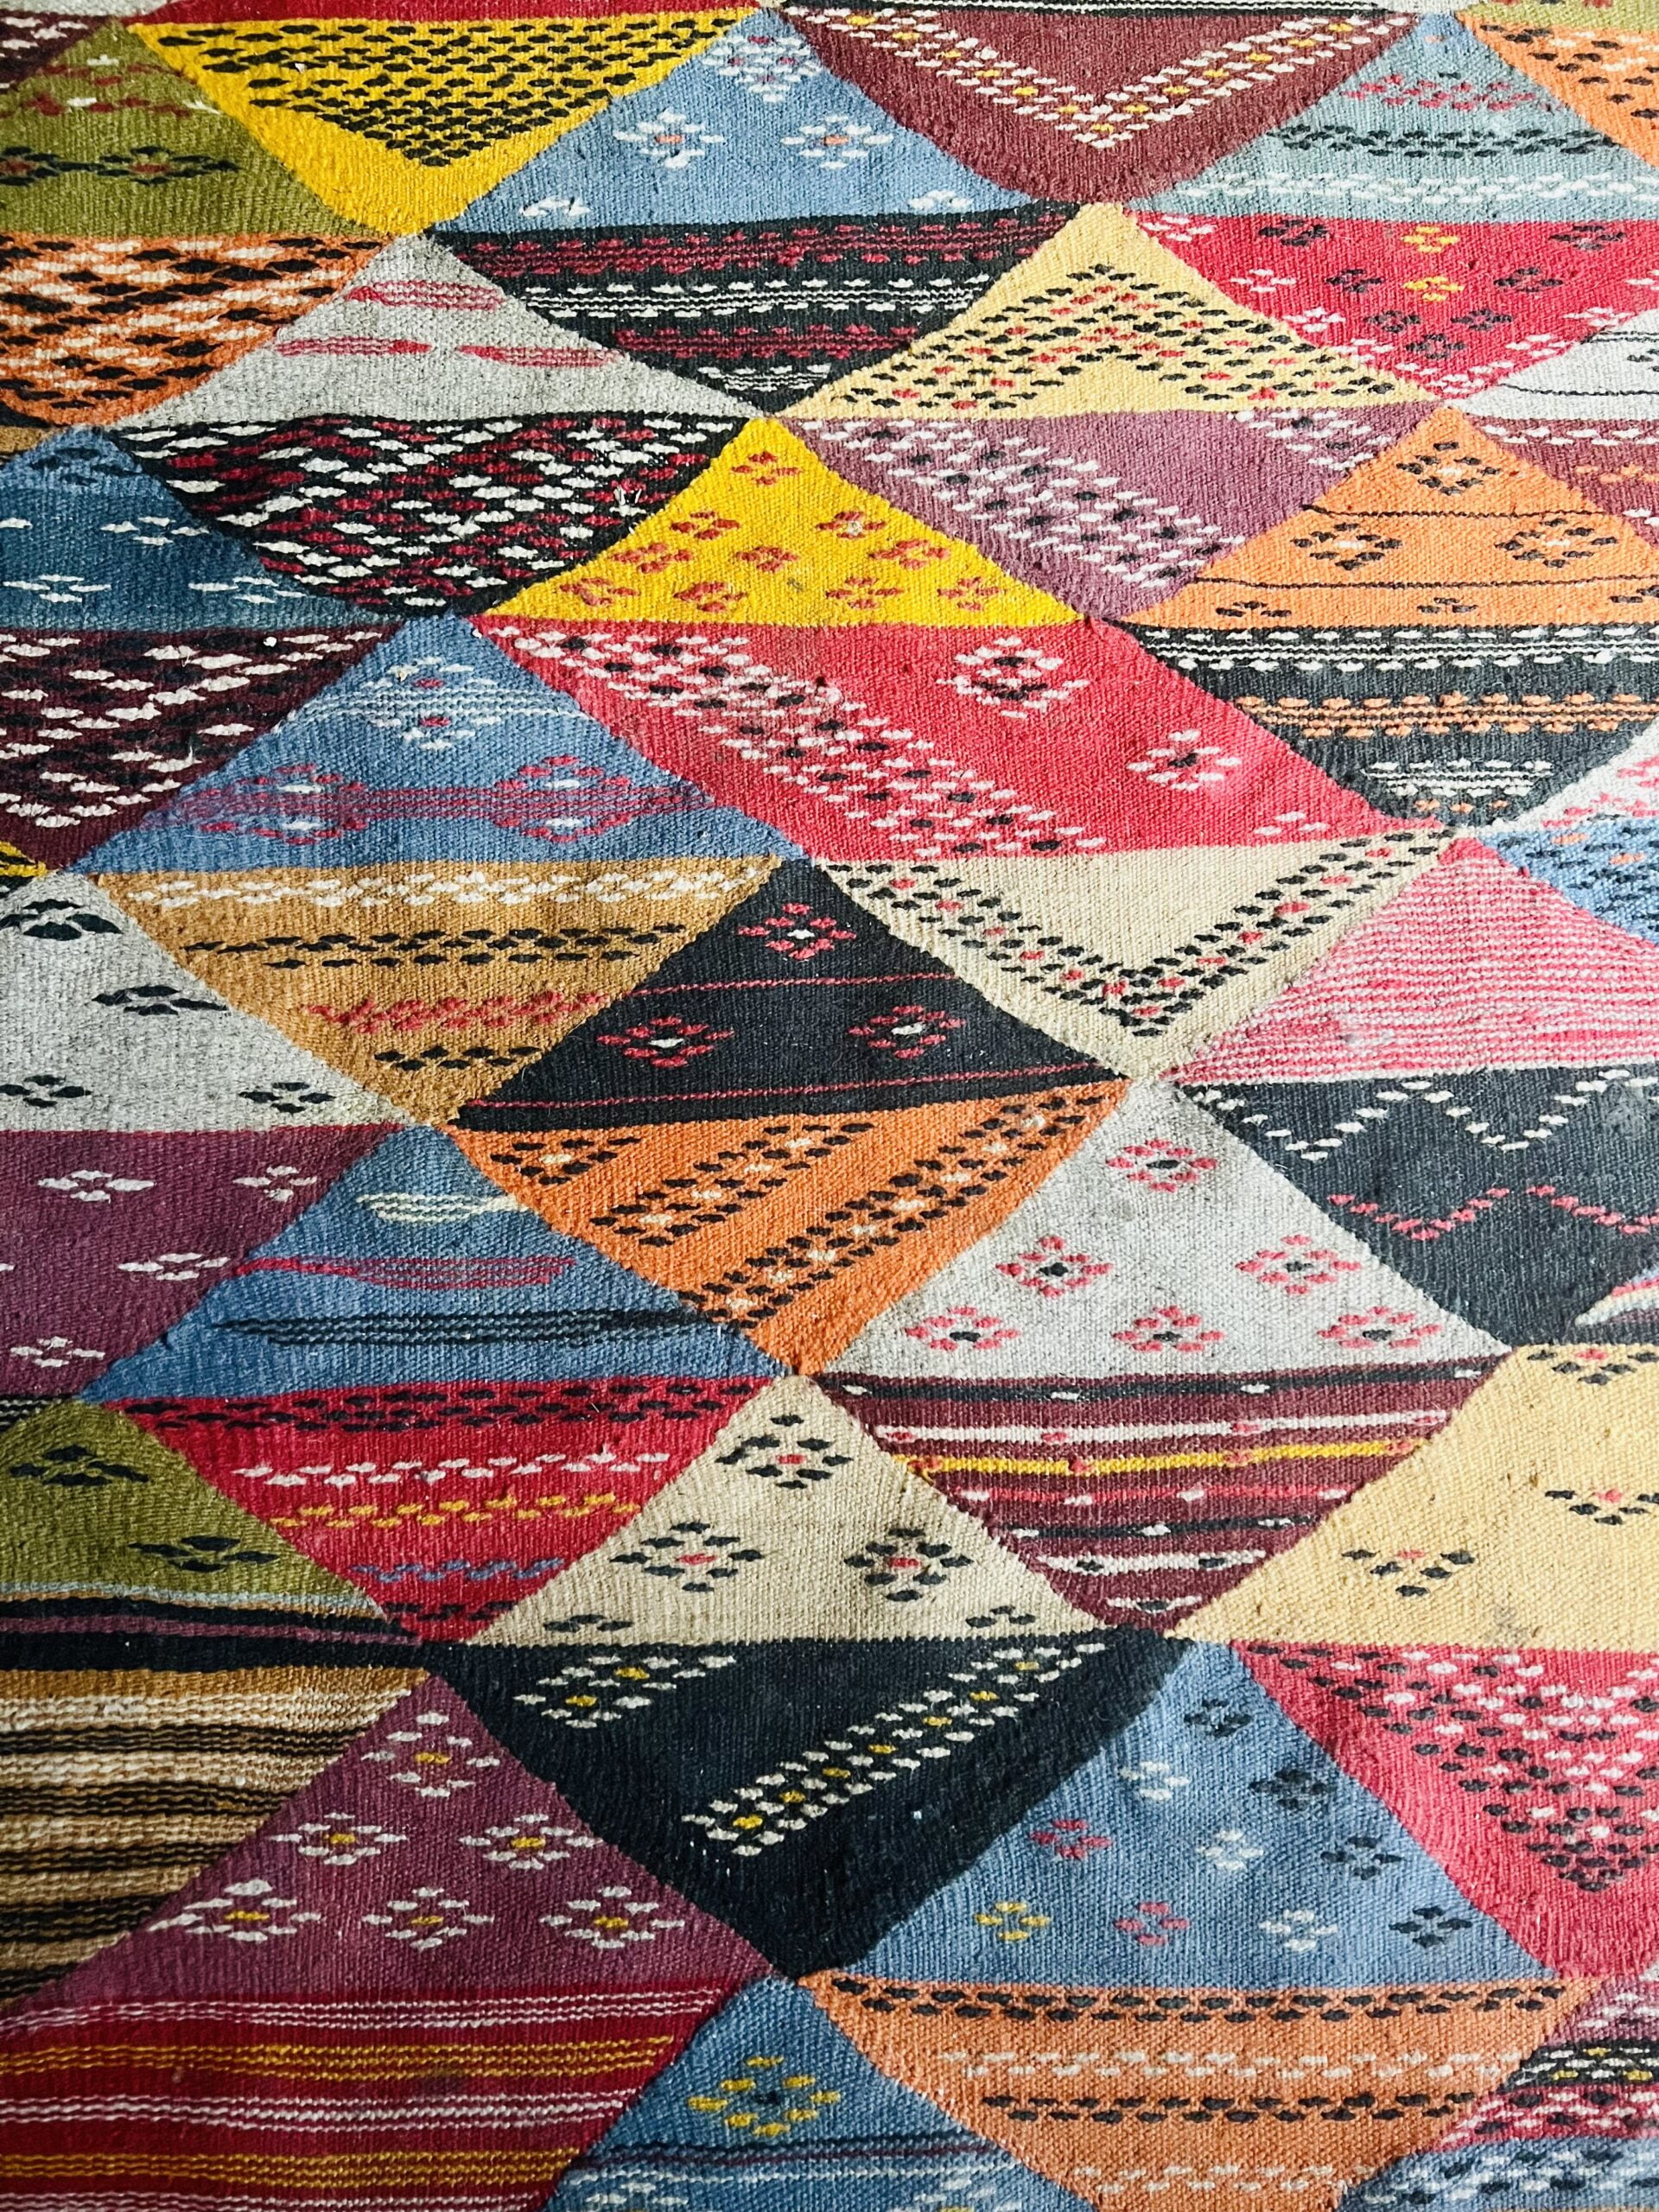 Berber carpets